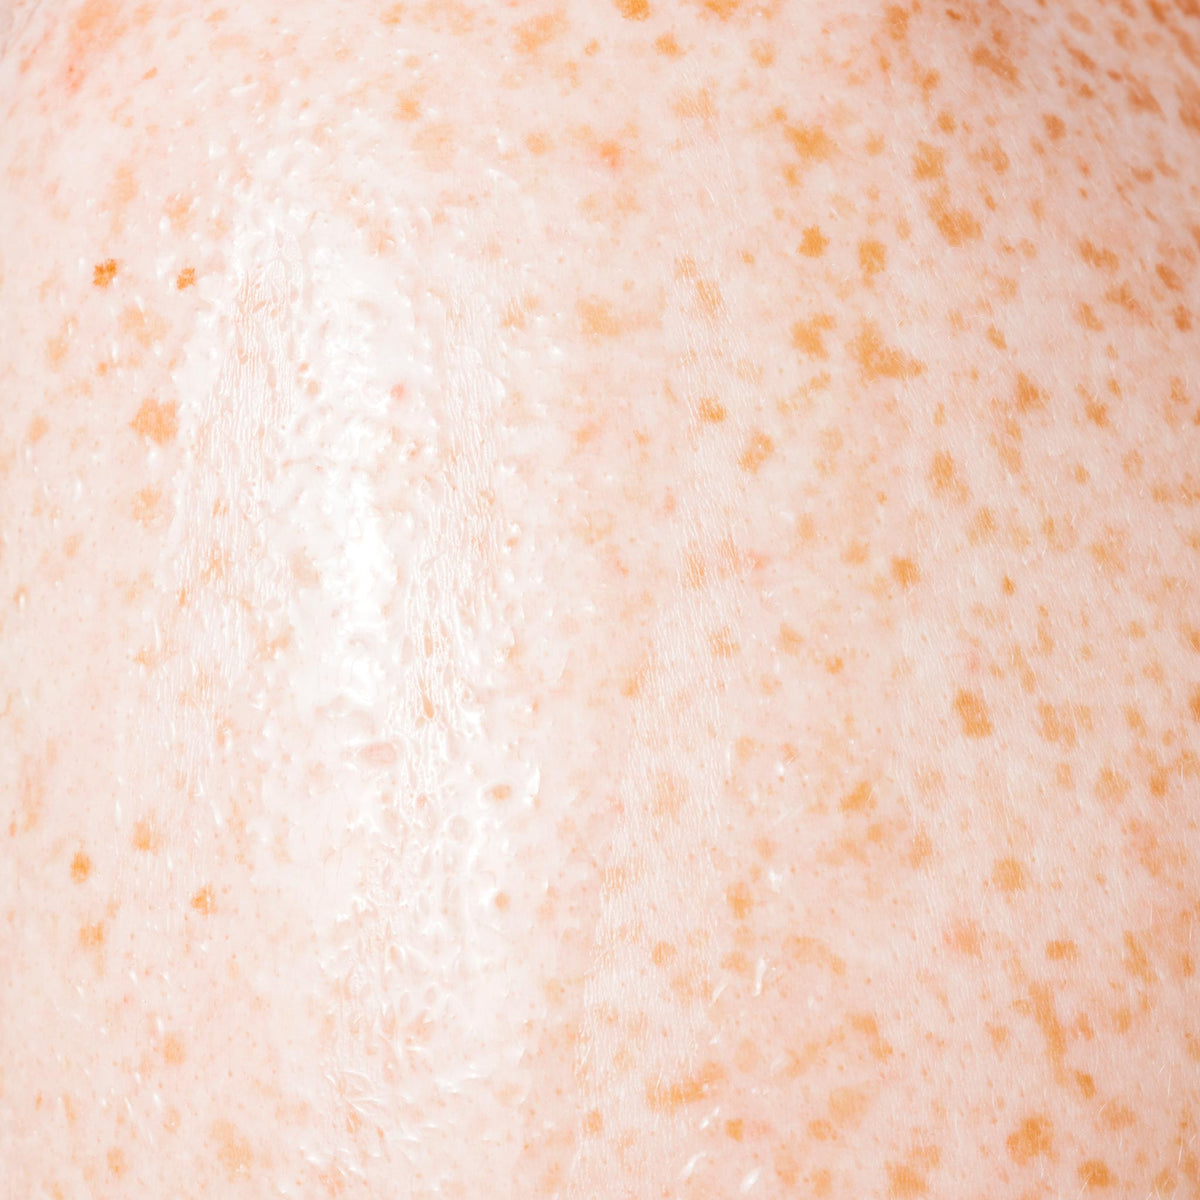 Lavender Orange Body Oil